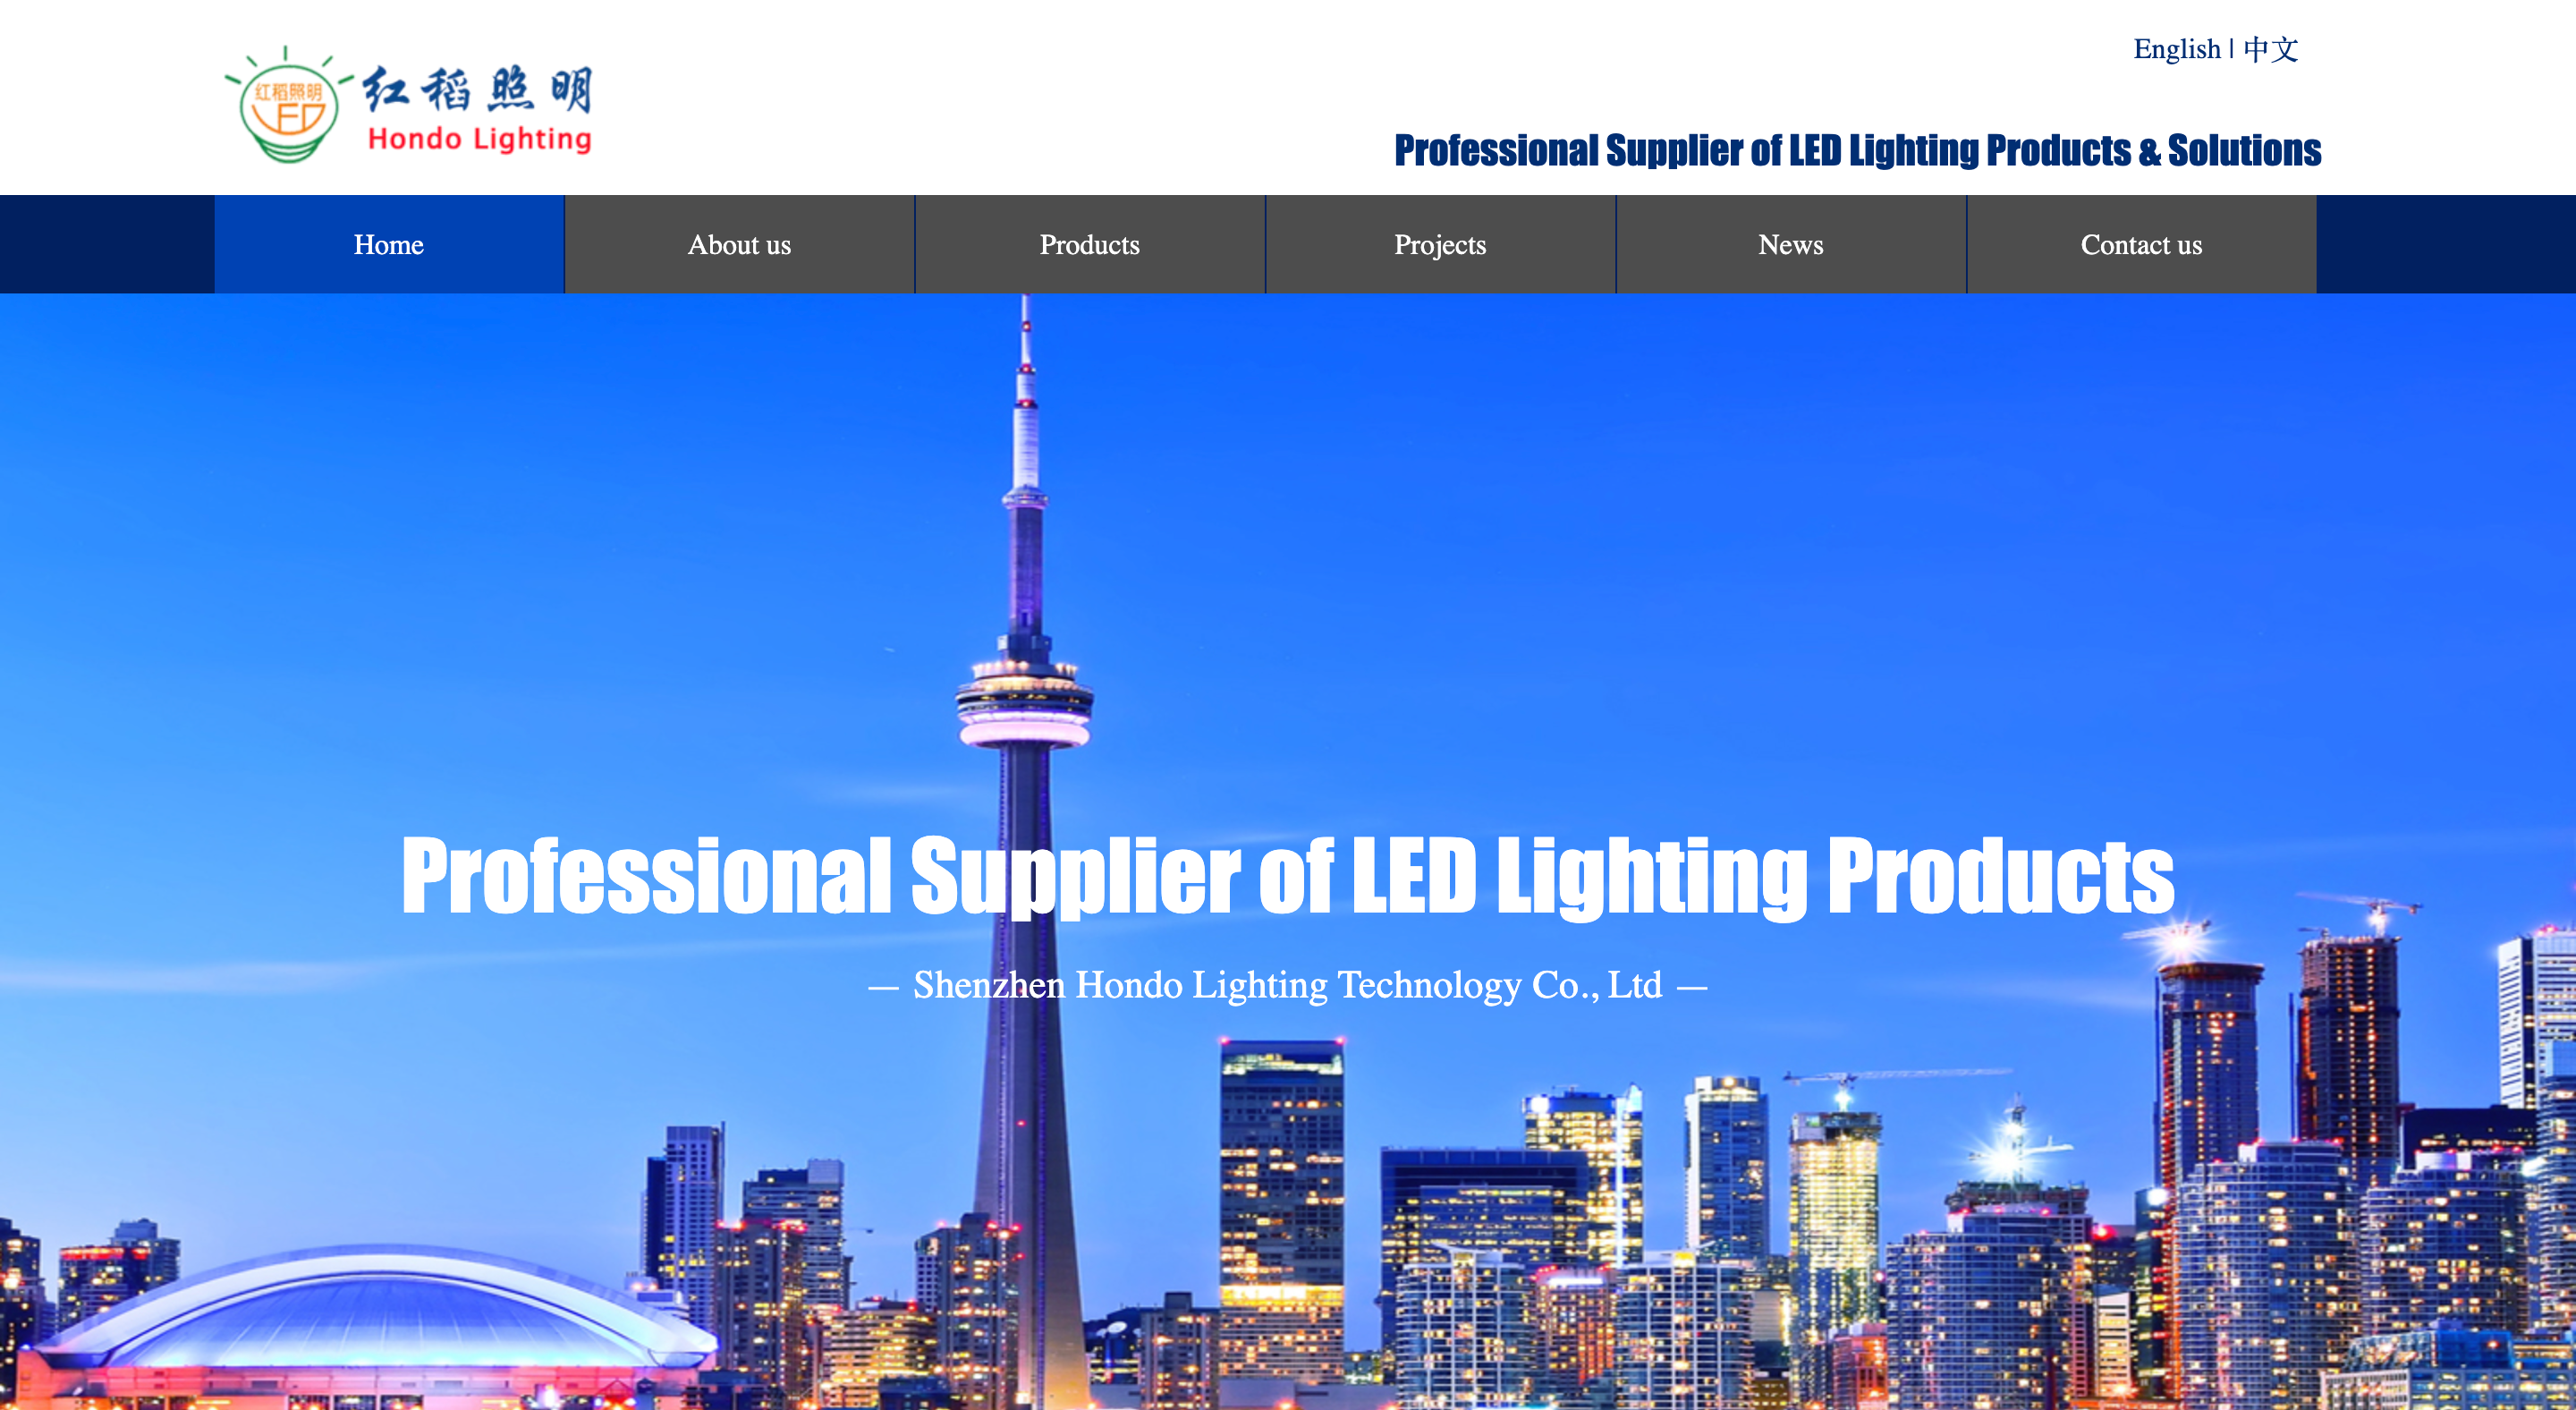 Tecnología de iluminación Co., Ltd. de Shenzhen Hondo